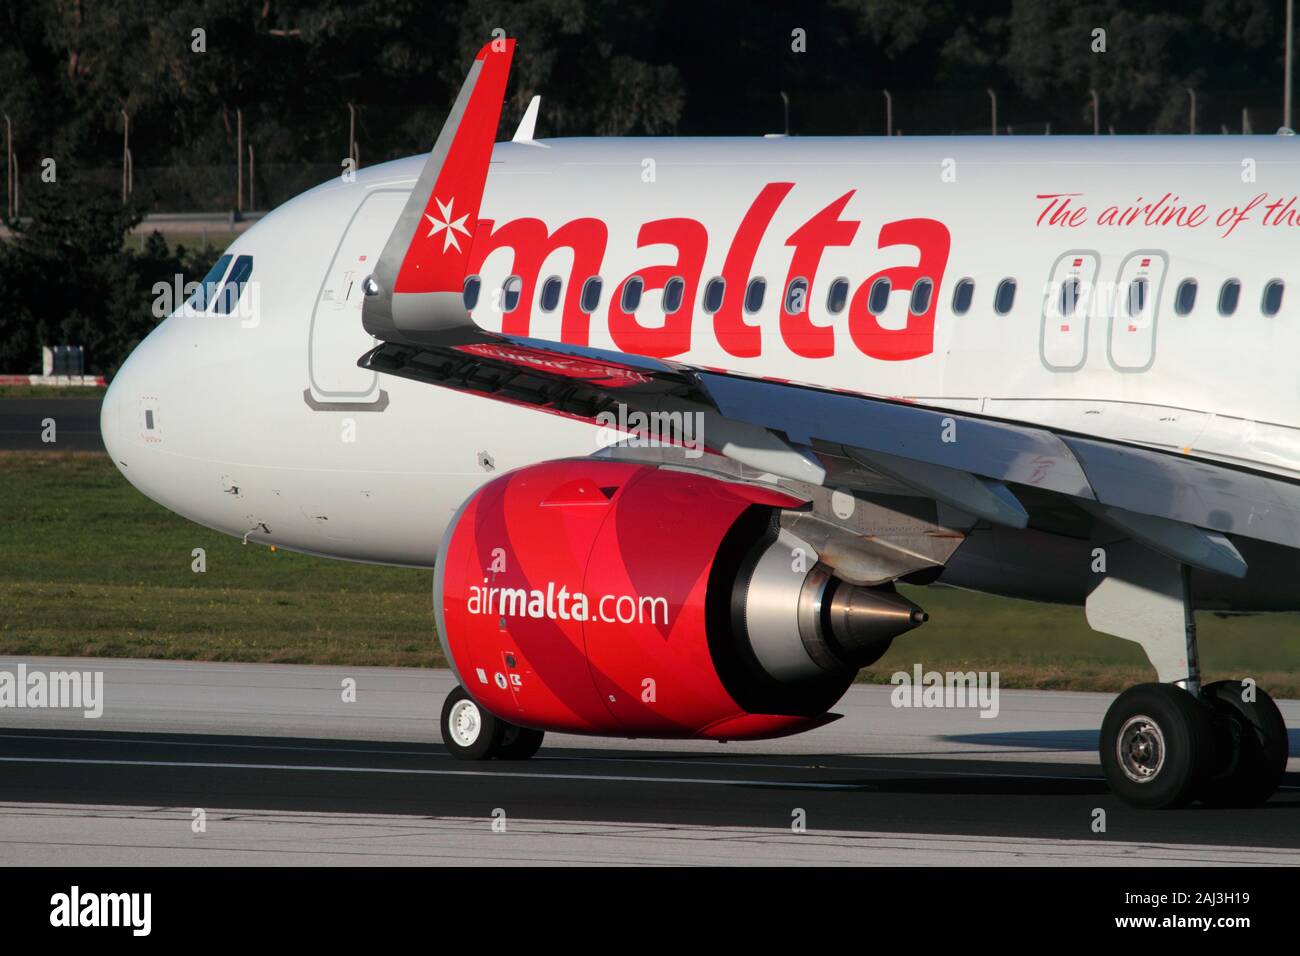 Primer plano de un avión Airbus A320neo de Air Malta, que muestra el motor a reacción Leap-1A de CFM International bajo el ala y el sharklet o winglet de punta de pico Foto de stock